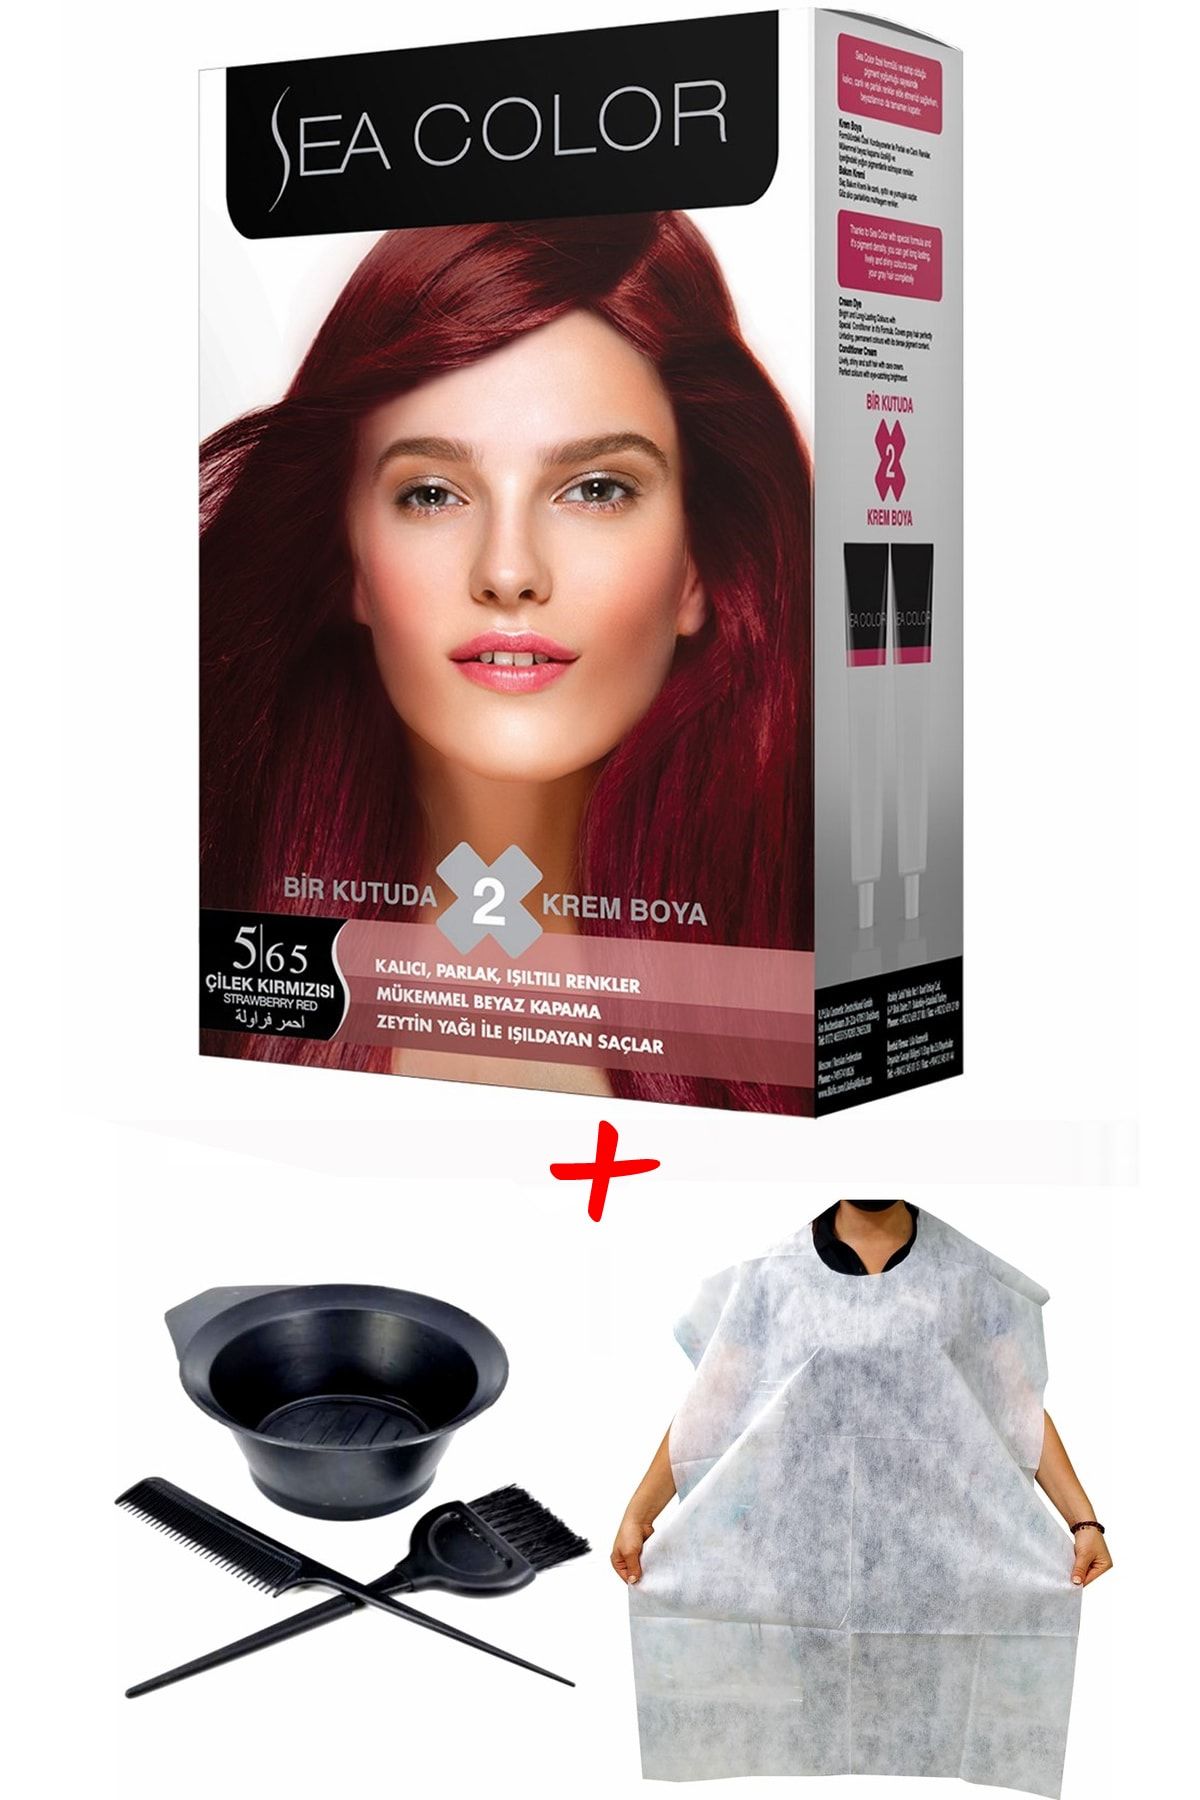 Sea Color Krem Saç Boyası 5.65 Çilek Kırmızısı 2 Tüplü Set + Boyama Seti + Boyama Önlüğü